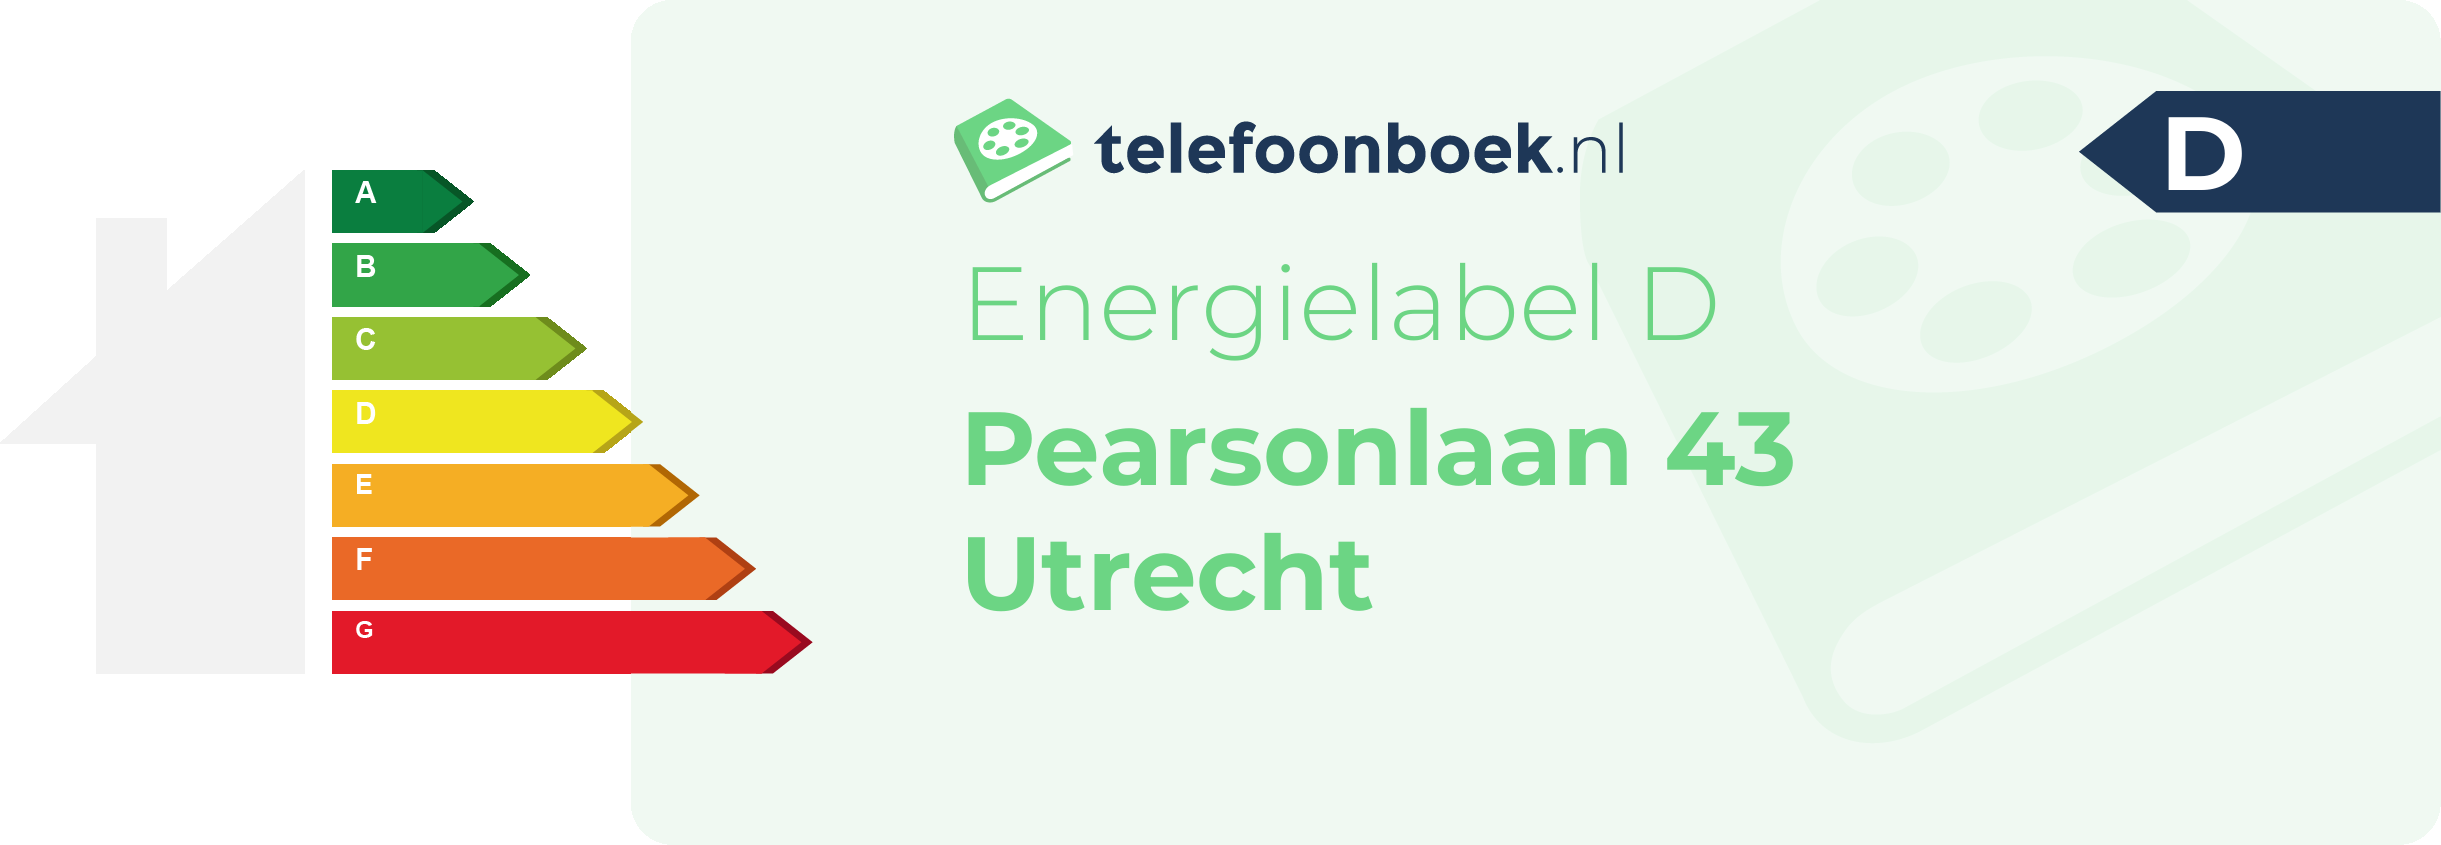 Energielabel Pearsonlaan 43 Utrecht